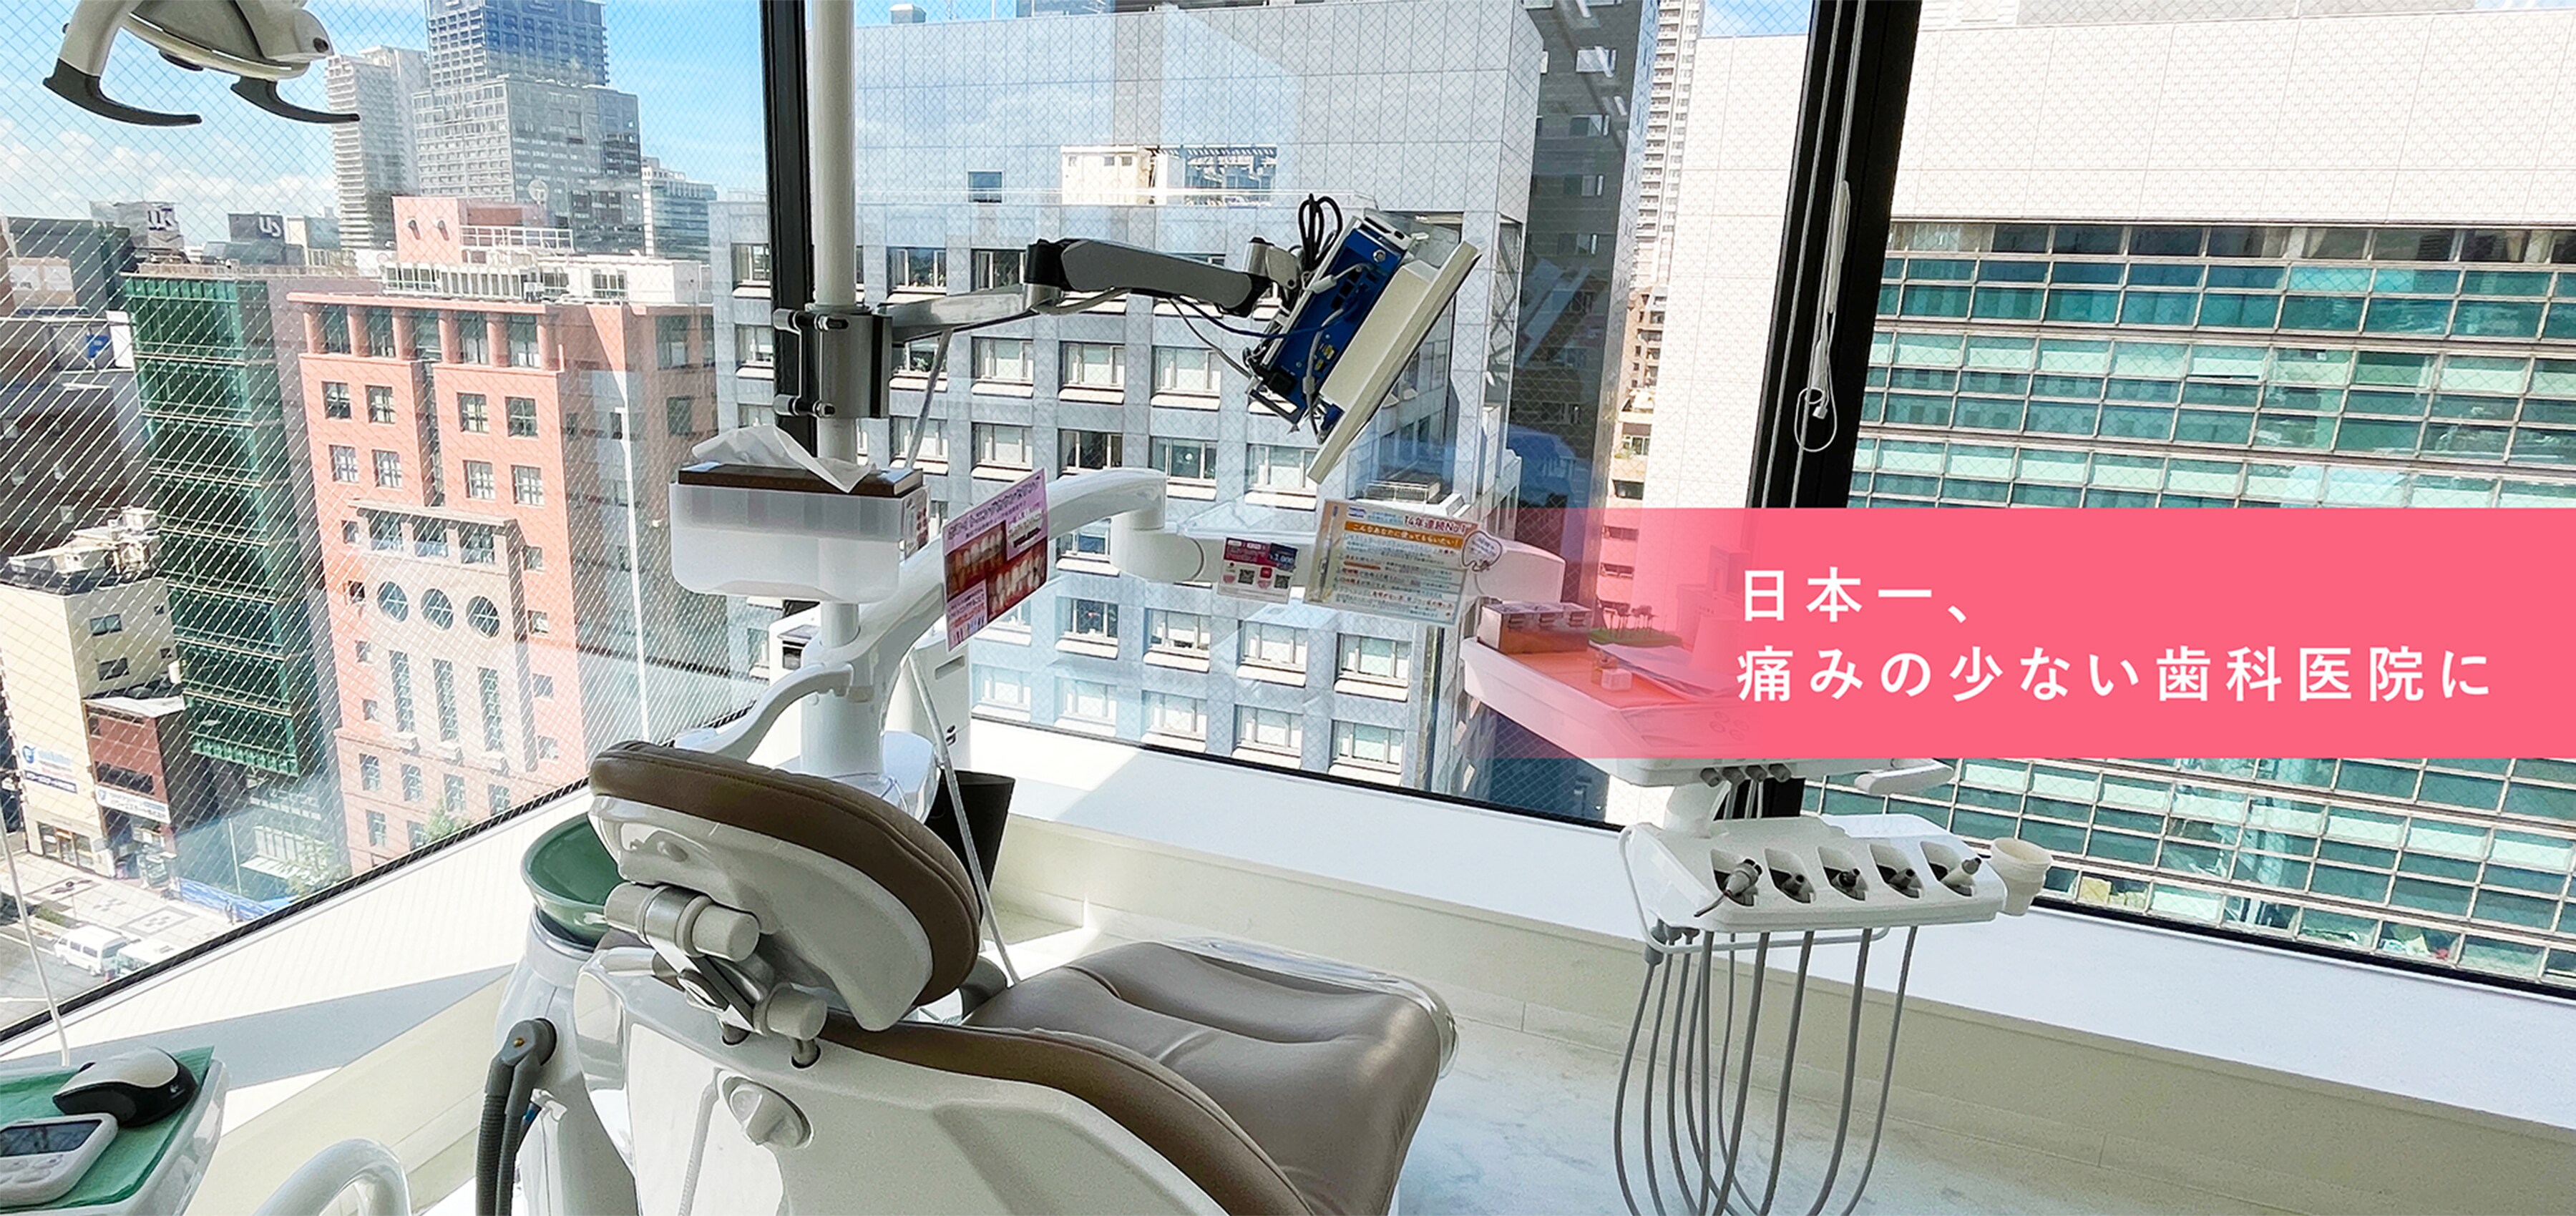 日本一、痛みの少ない歯科院に。